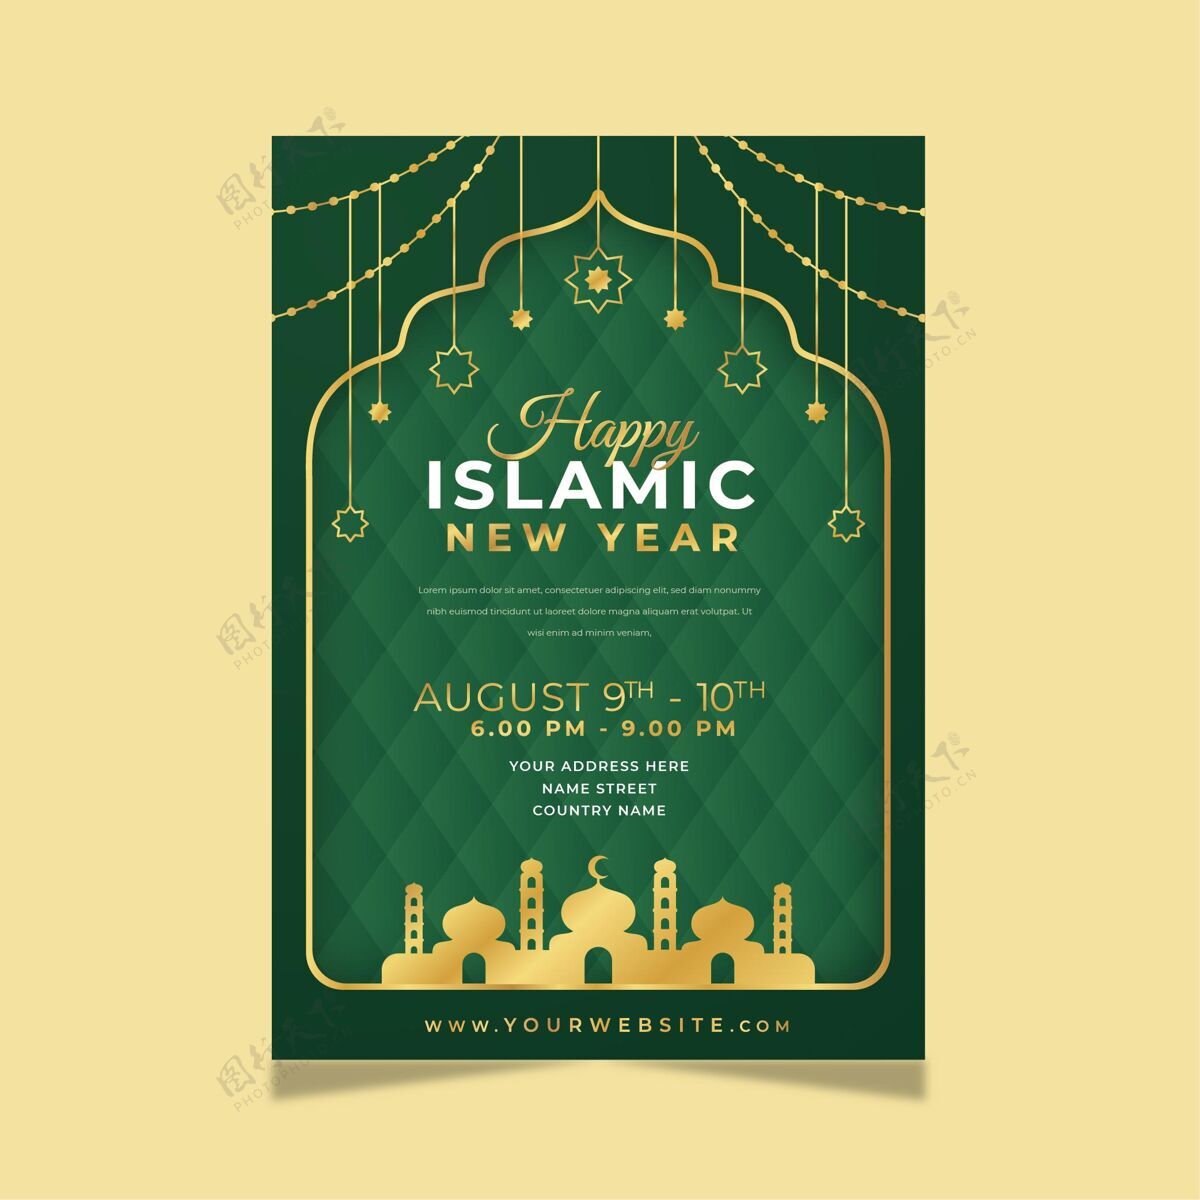 穆斯林纸质伊斯兰新年垂直海报模板活动阿拉伯语新年8月9日